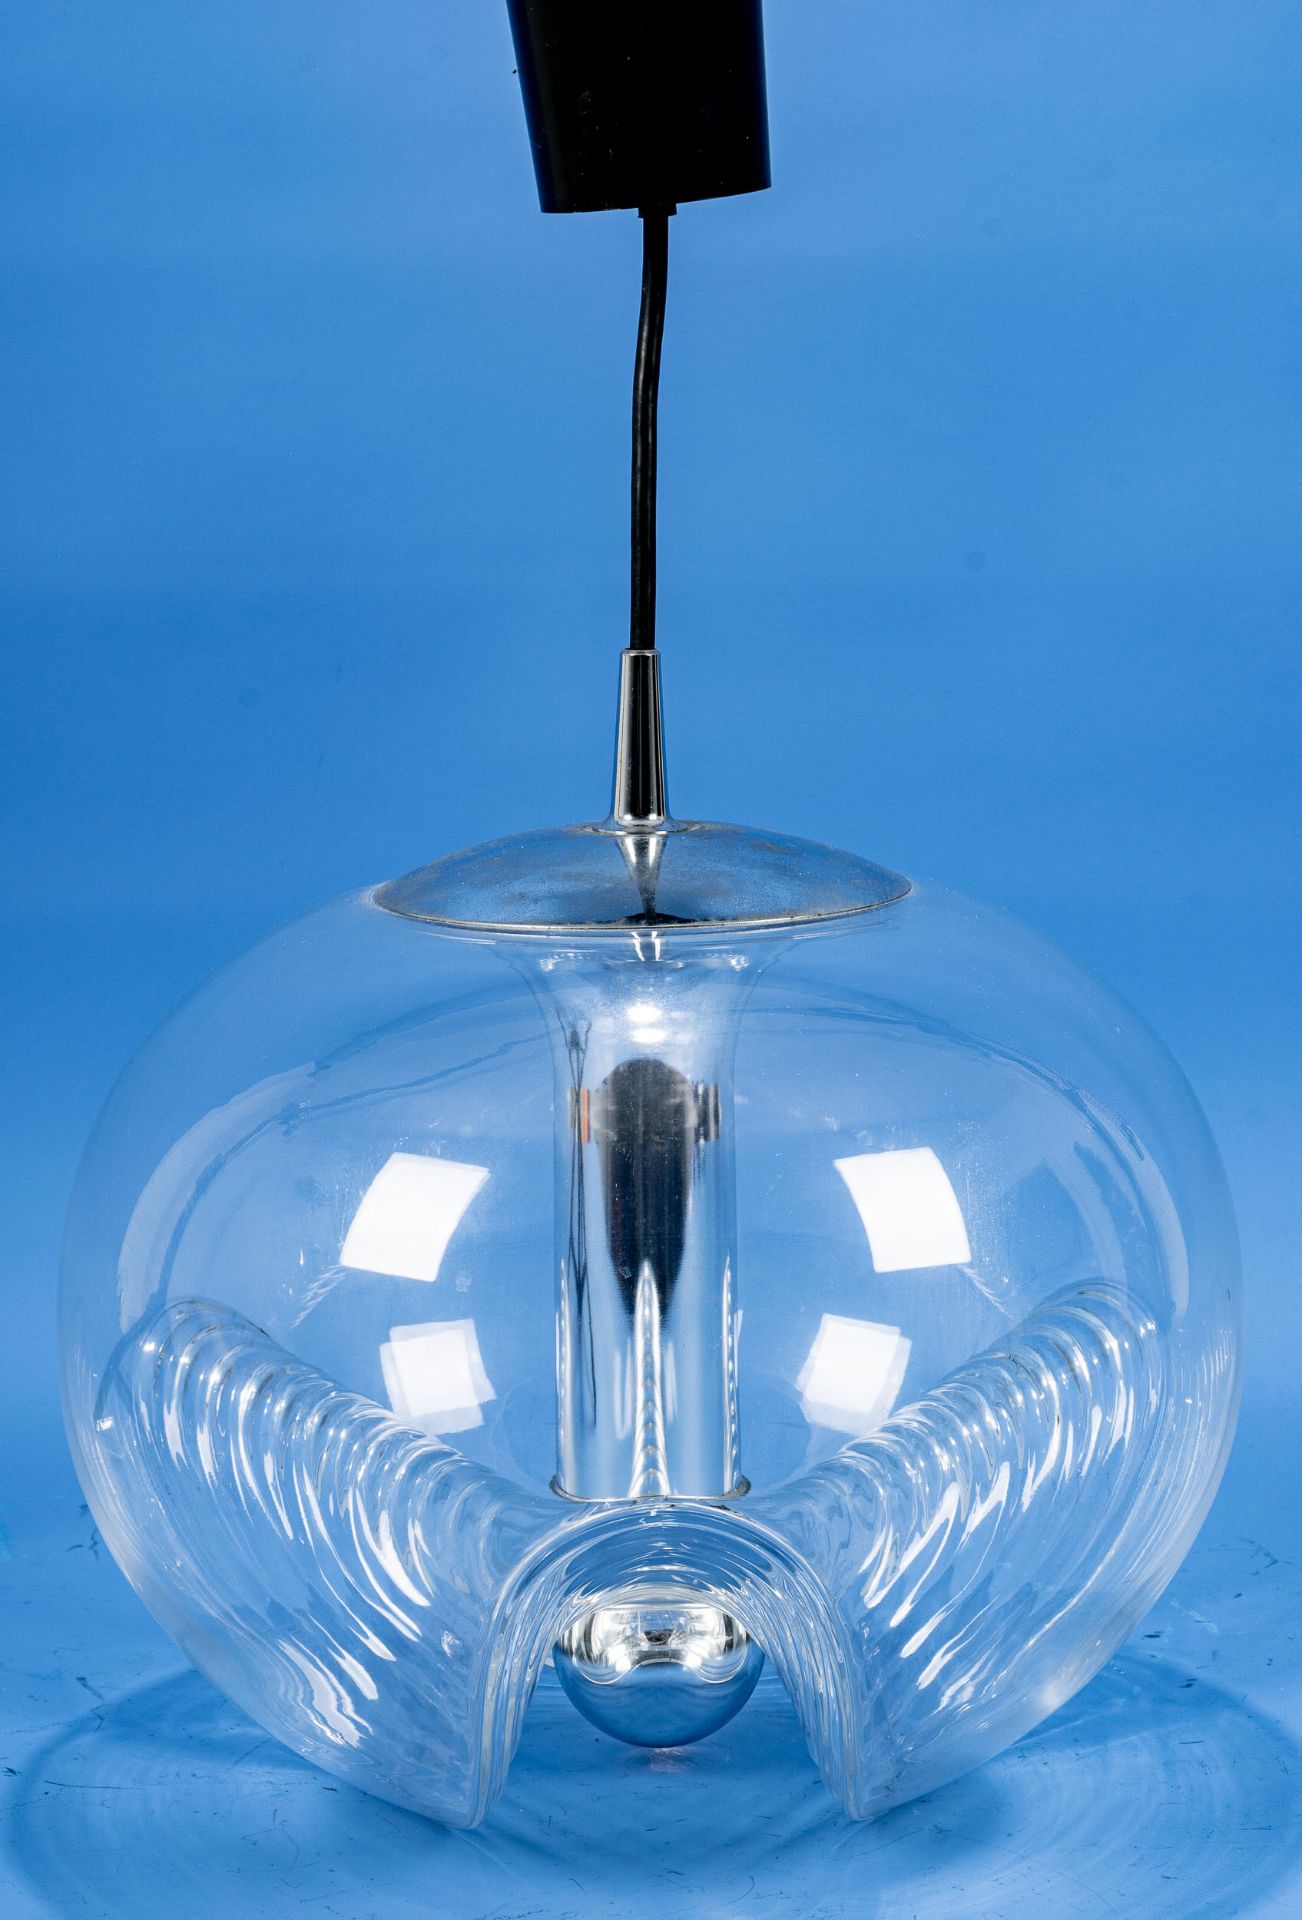 Kultige SPACE-AGE Deckenlampe der 1960er/70er Jahre, einflammig elektrifizierter Glaskorpus, Durchm - Bild 2 aus 10